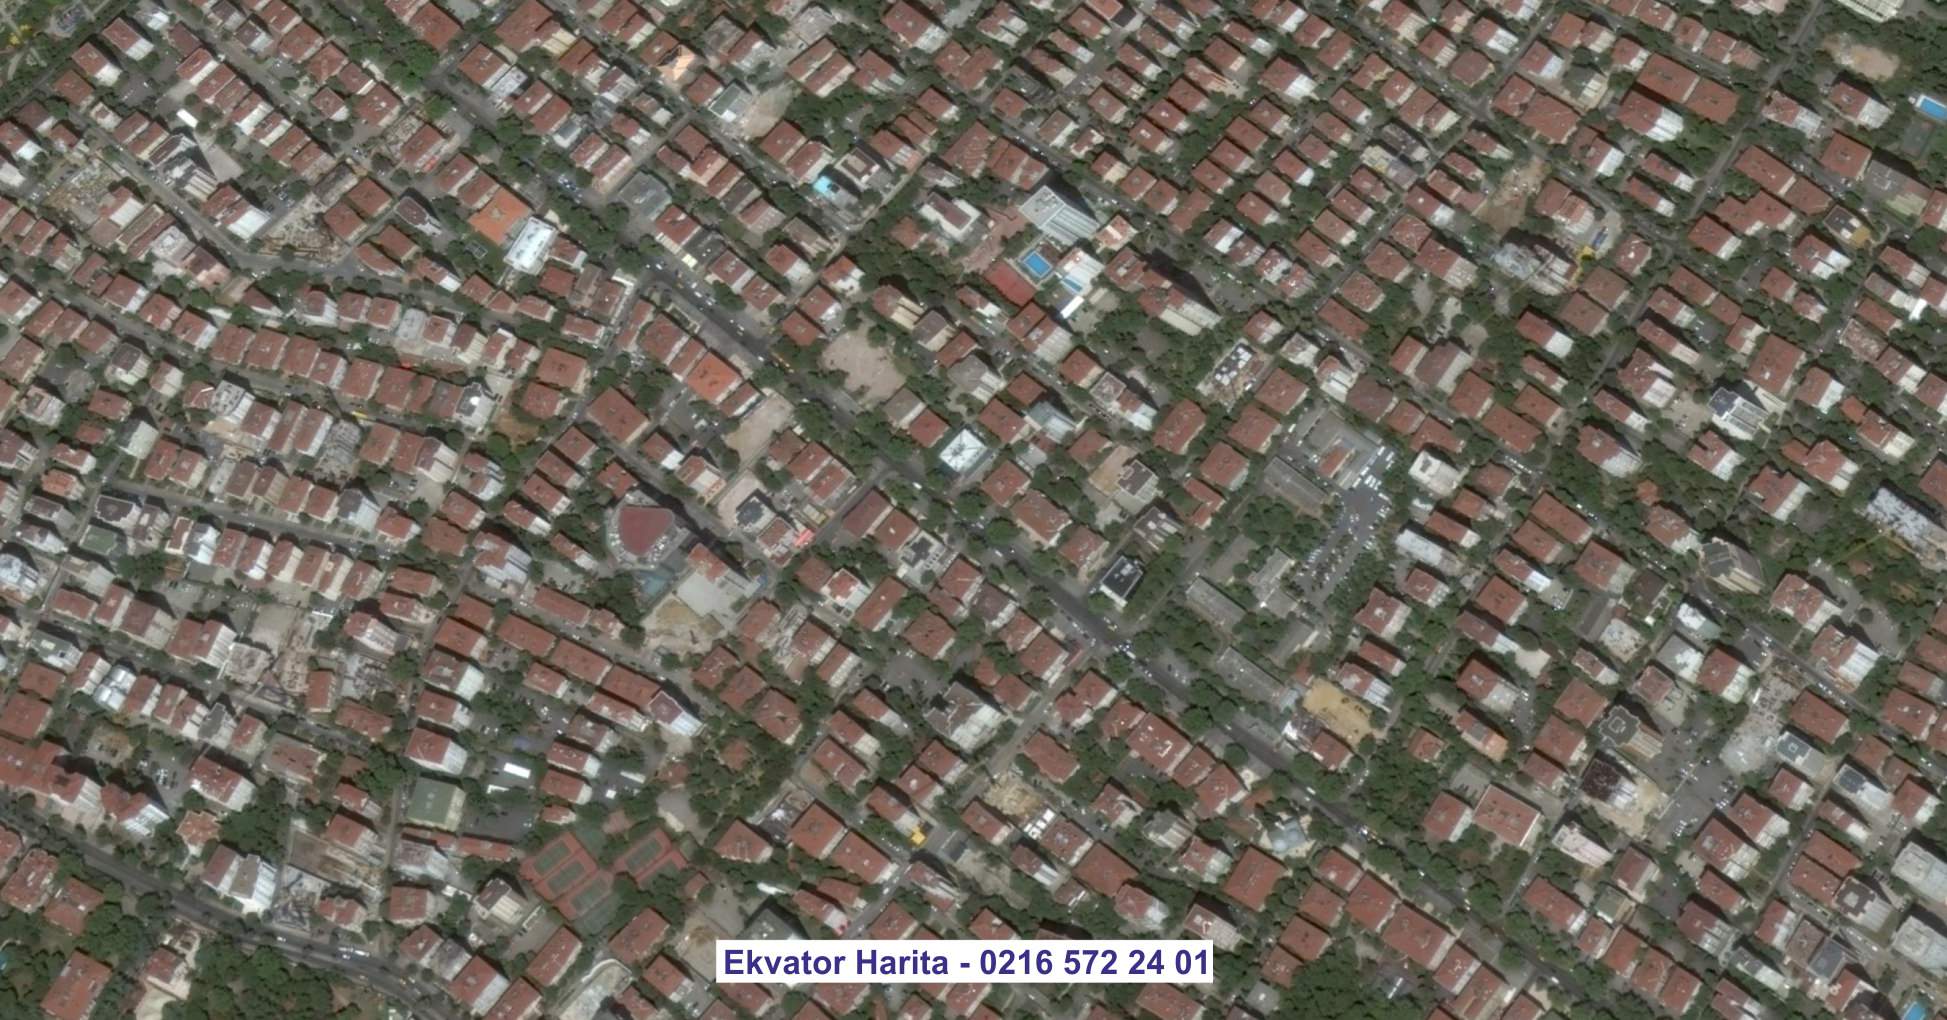 Mersin Uydu Görüntüsü Örnek Fotoğrafı